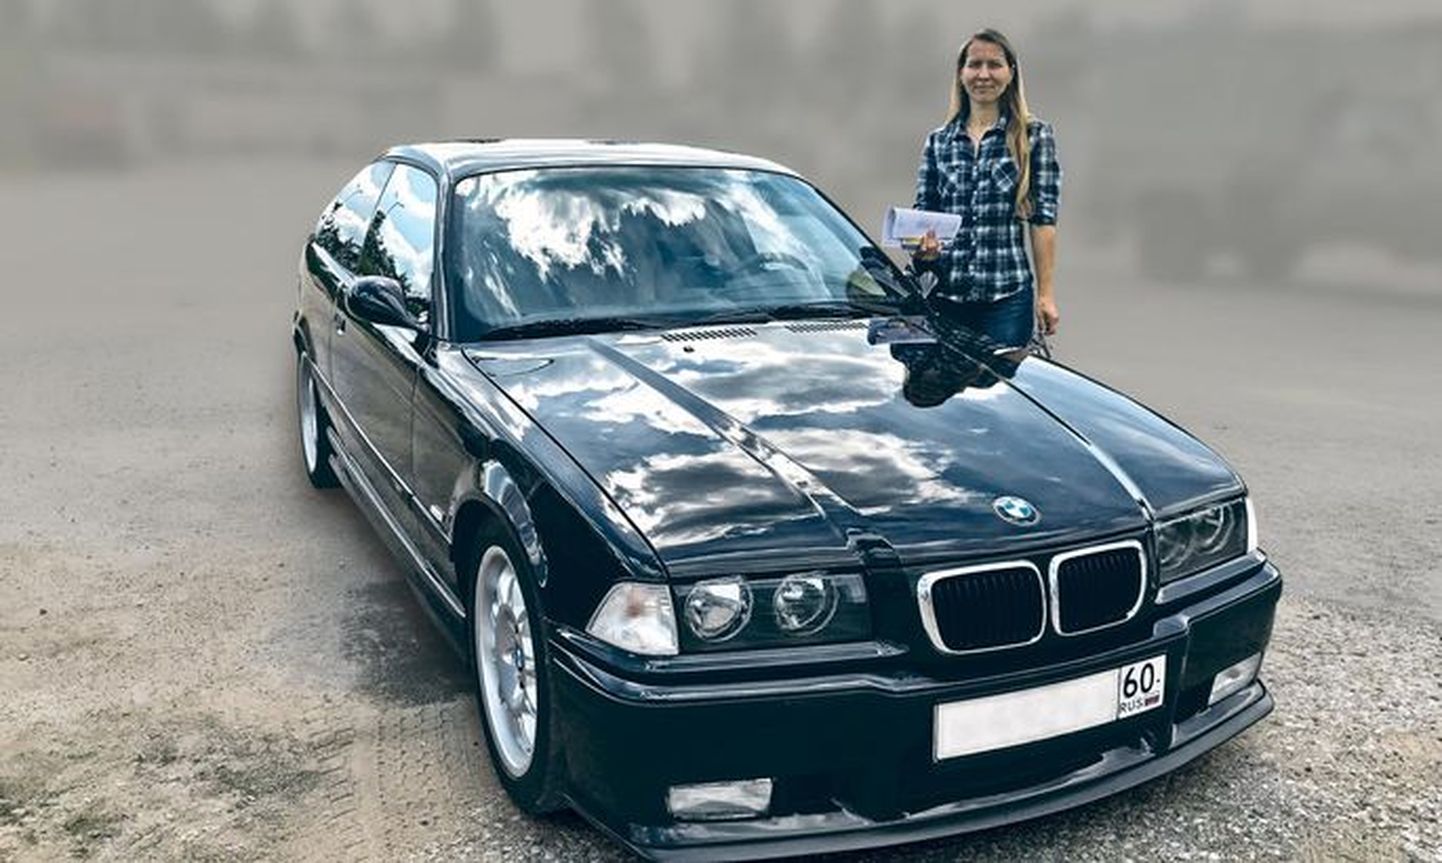 19 июня этого года занимающаяся автоспортом Ольга Стебихова получила назад свой BMW M3, который в течение десяти месяцев находился на ремонте в Эстонии.